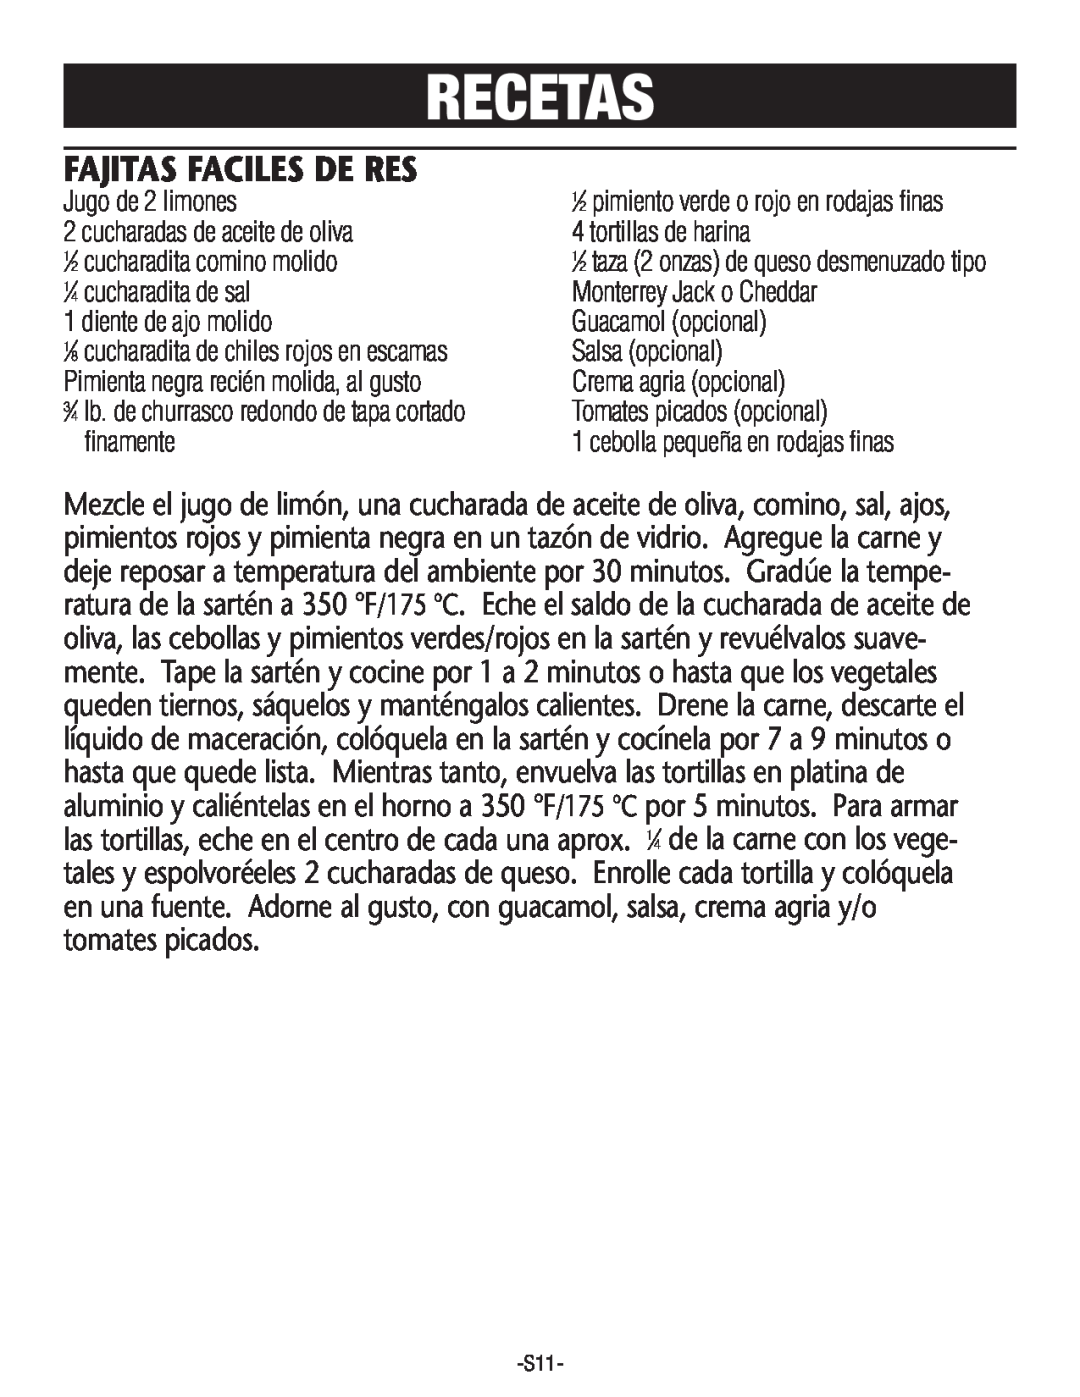 Rival S160 manual Recetas, Fajitas Faciles De Res, Jugo de 2 limones 2 cucharadasde aceitede oliva, dientede ajo molido 